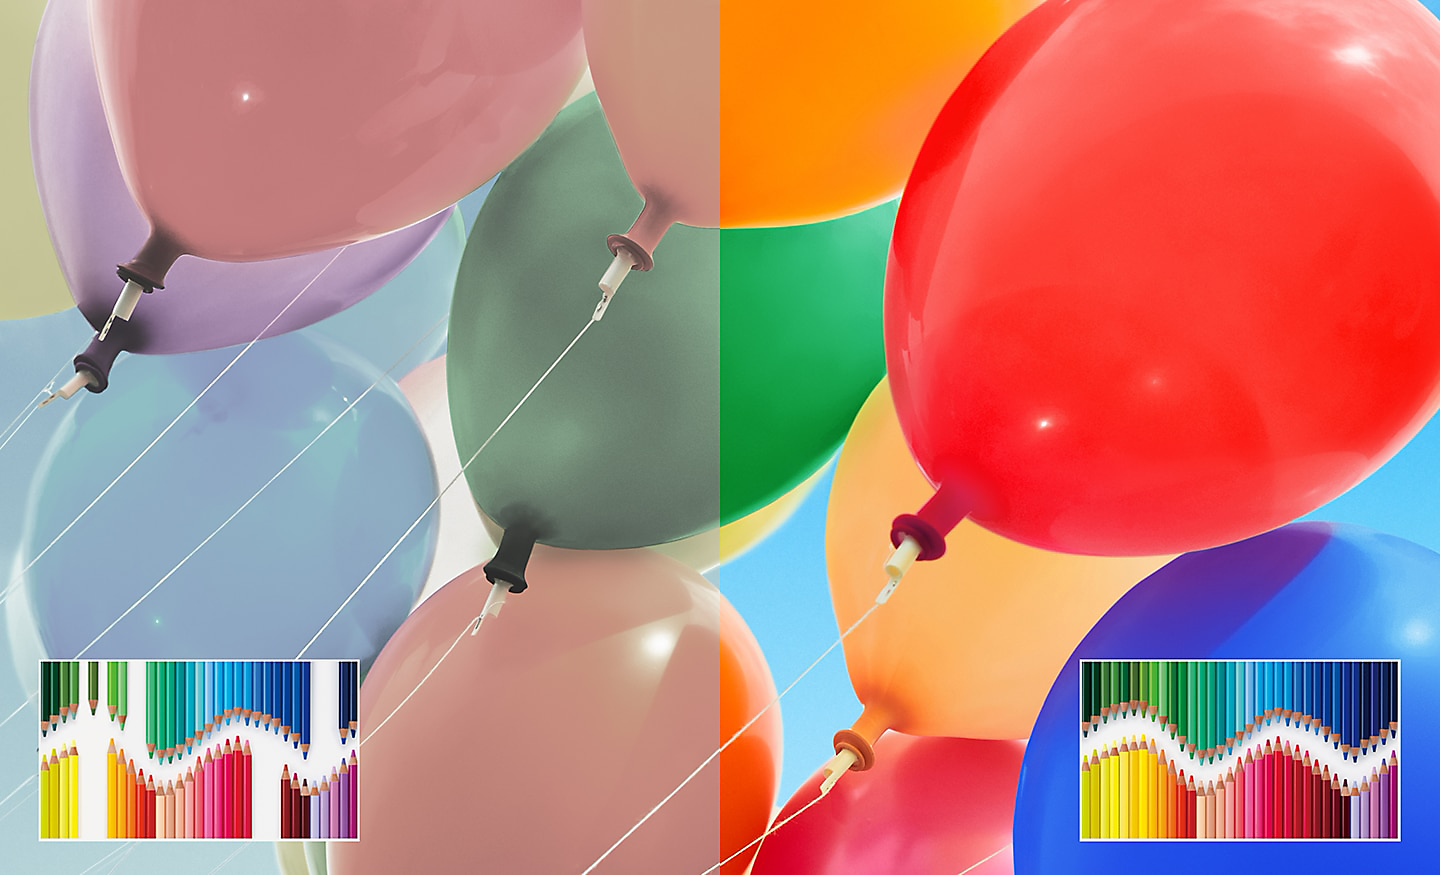 Slika podeljenog ekrana sa šarenim balonima kod koje su na desnoj strani prikazani poboljšana osvetljenost i kontrast